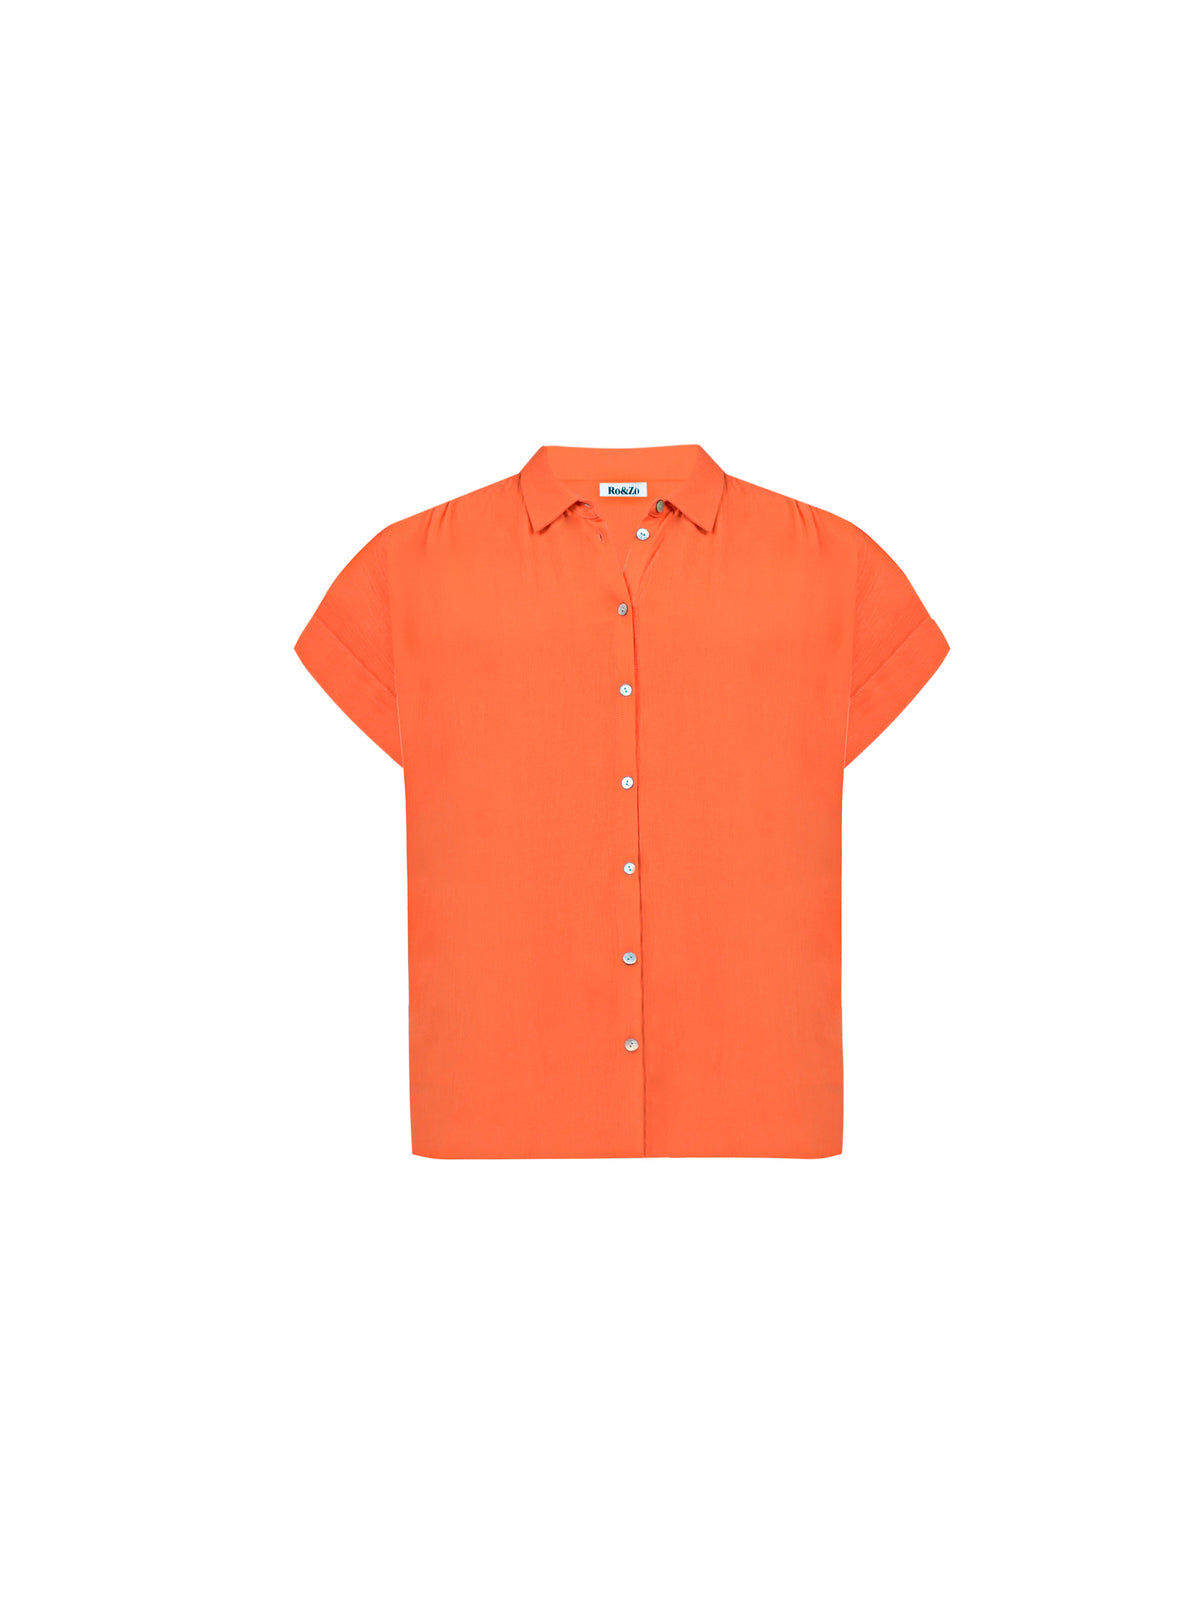 Orange Crinkle Grown On Sleeve Shirt